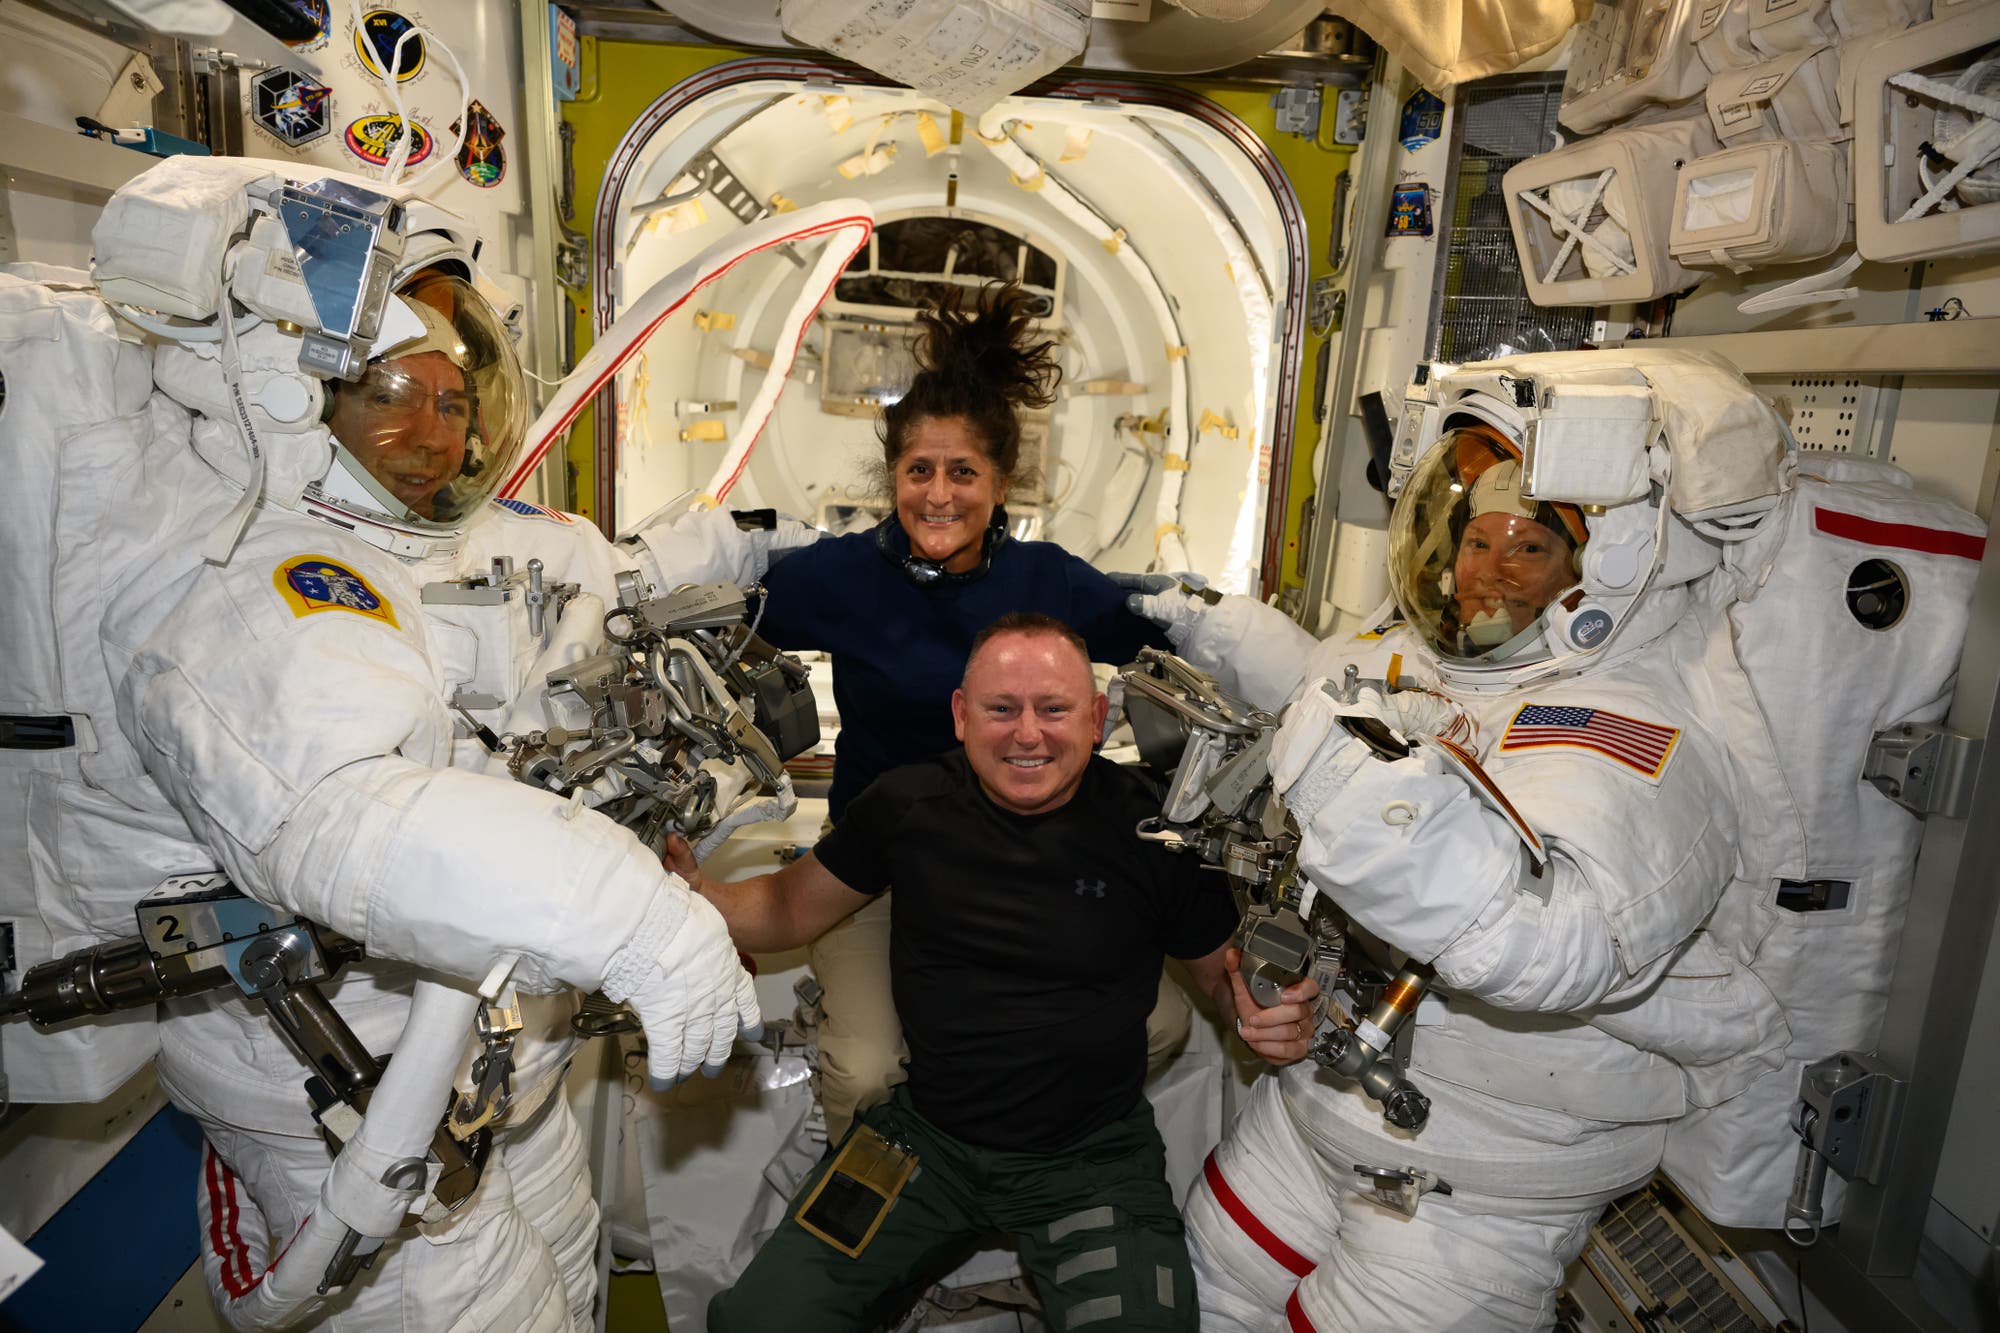 Die beiden Starliner-Astronauten posieren mit zwei Astronauten im Raumanzug an Bord der ISS